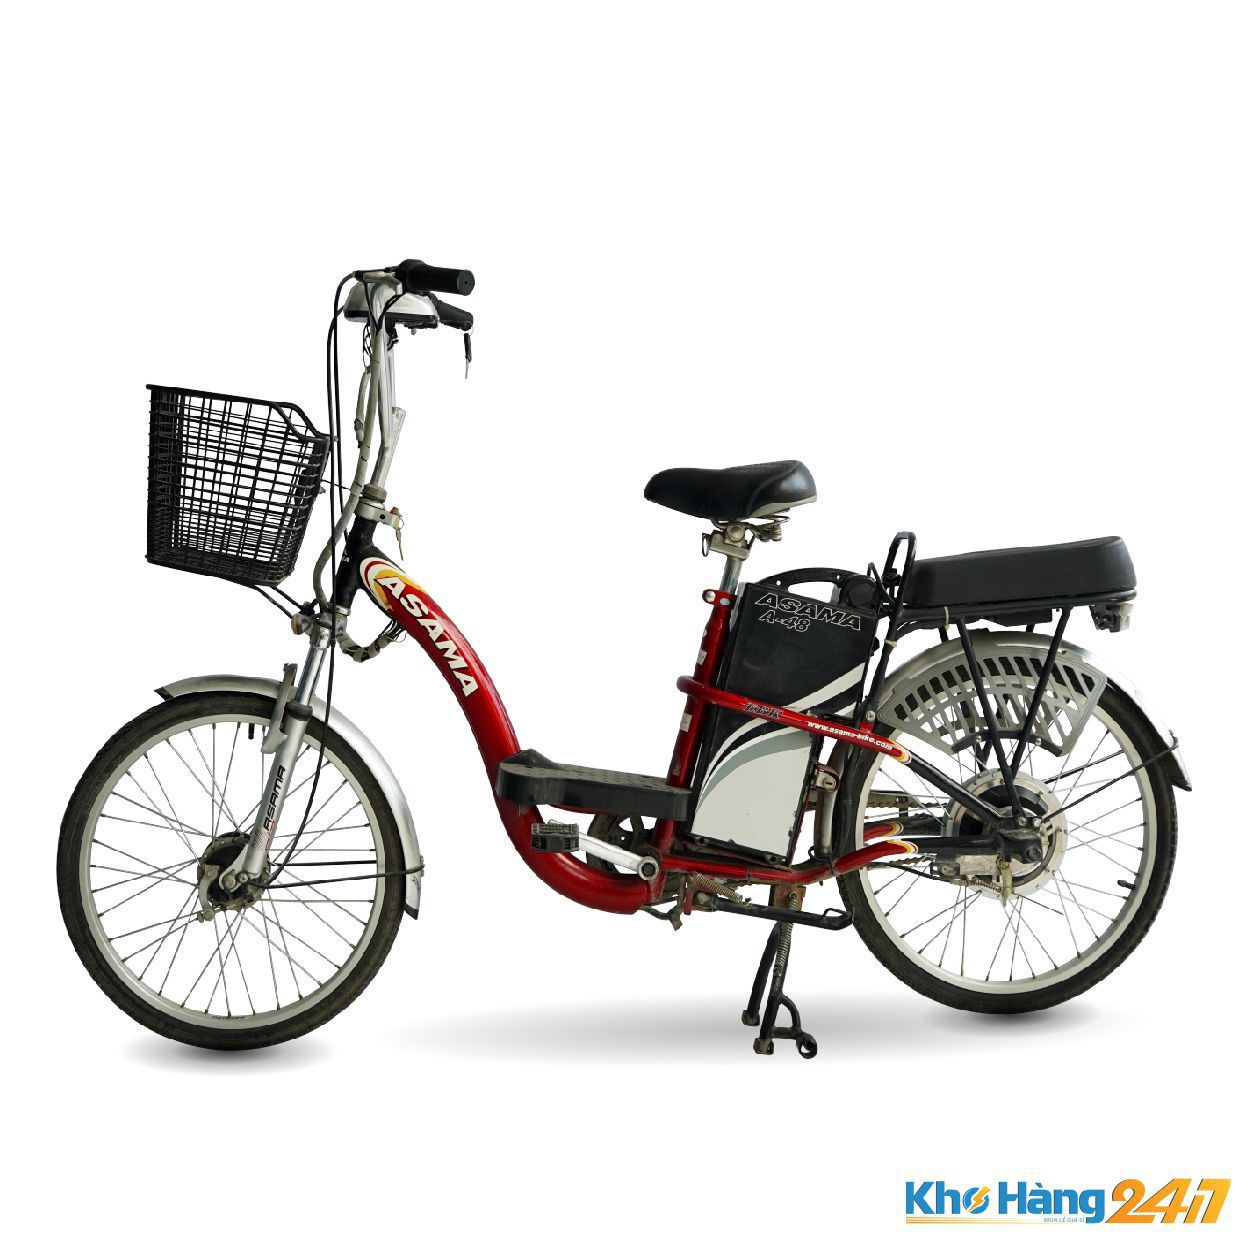 Xe dap dien Asama A 48 do 02 - Tổng hợp những mẫu xe đạp điện giá rẻ dưới 10 triệu bạn nên mua tại khohang247